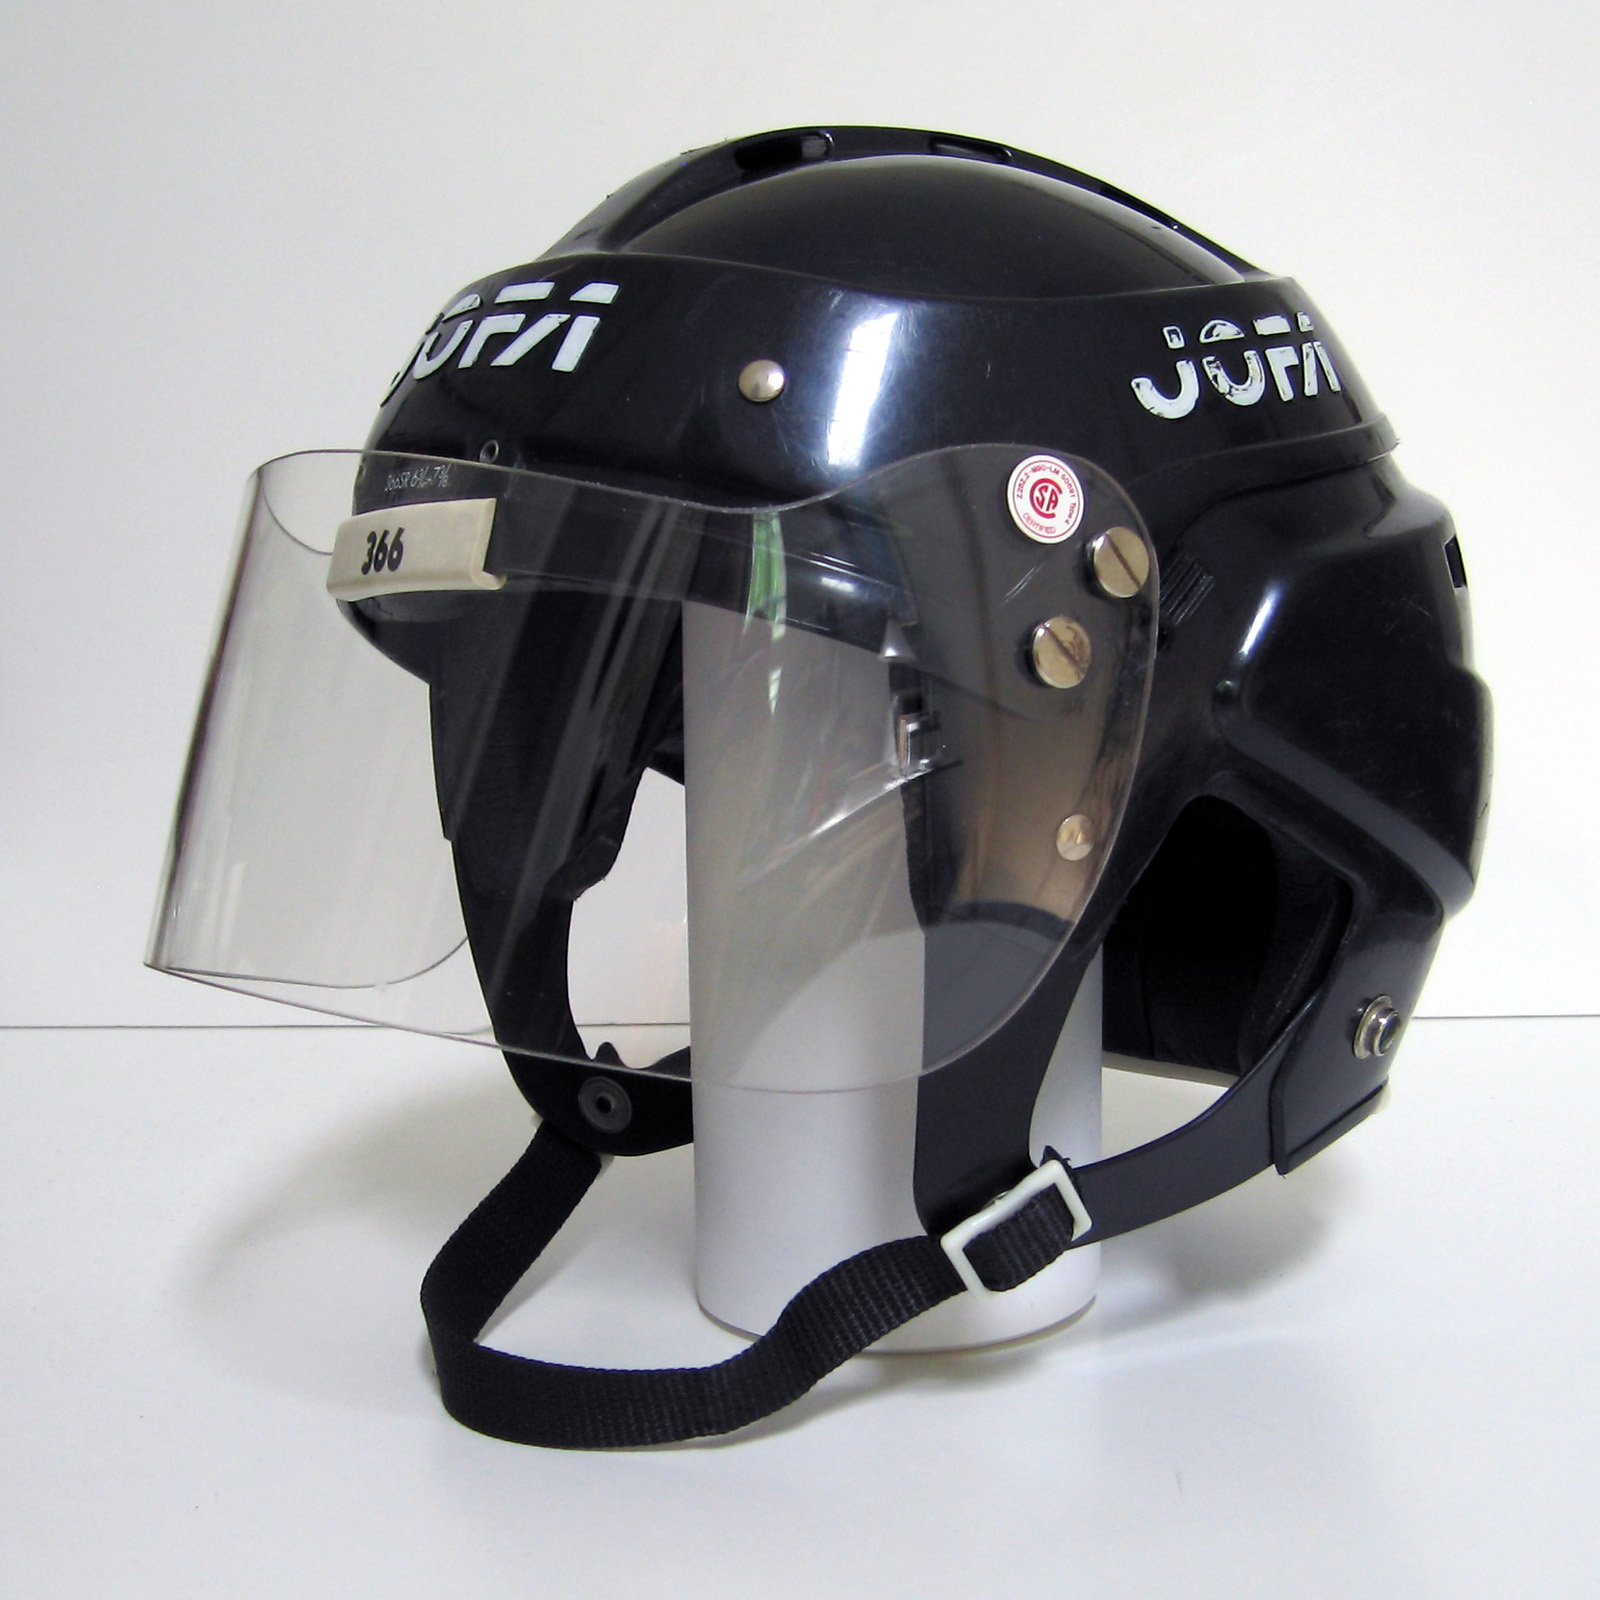 jofa-helmets-halos-of-hockey-may-2012